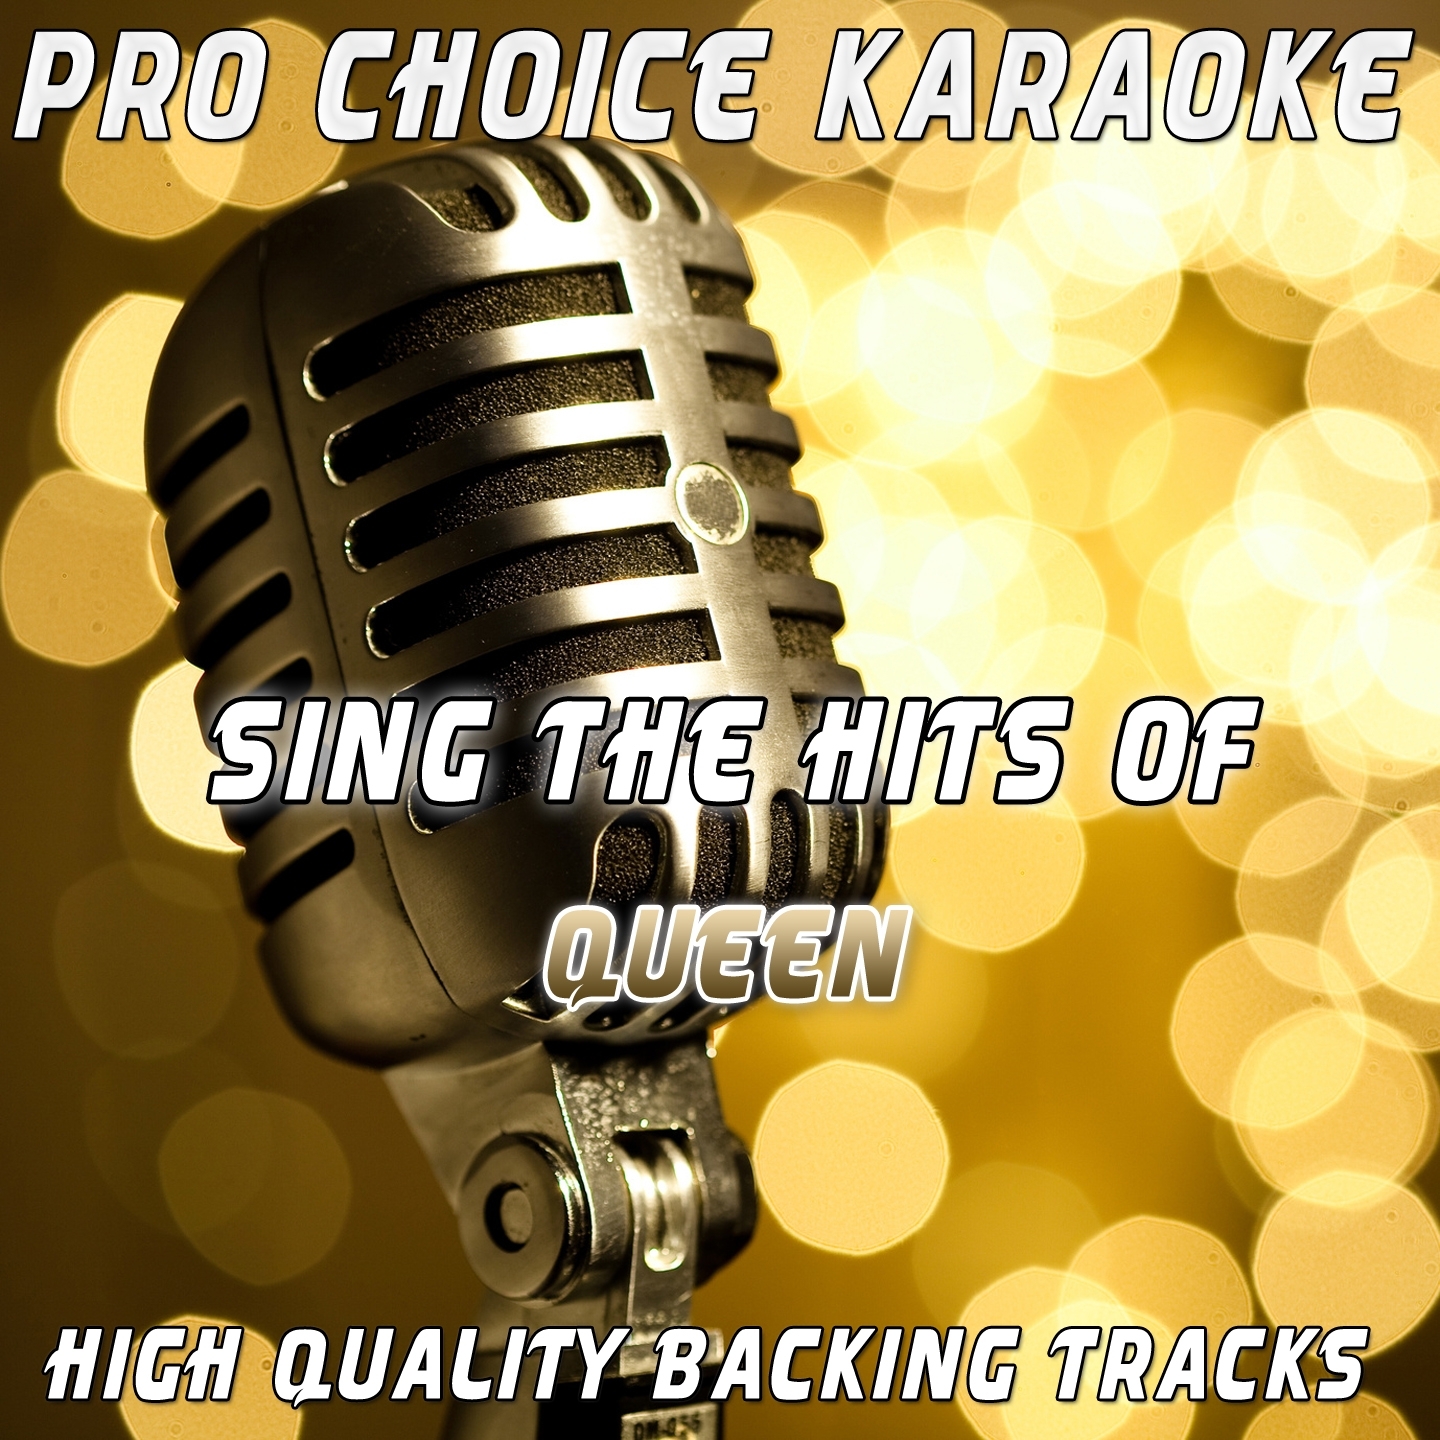 Killer Queen (Karaoke Version)